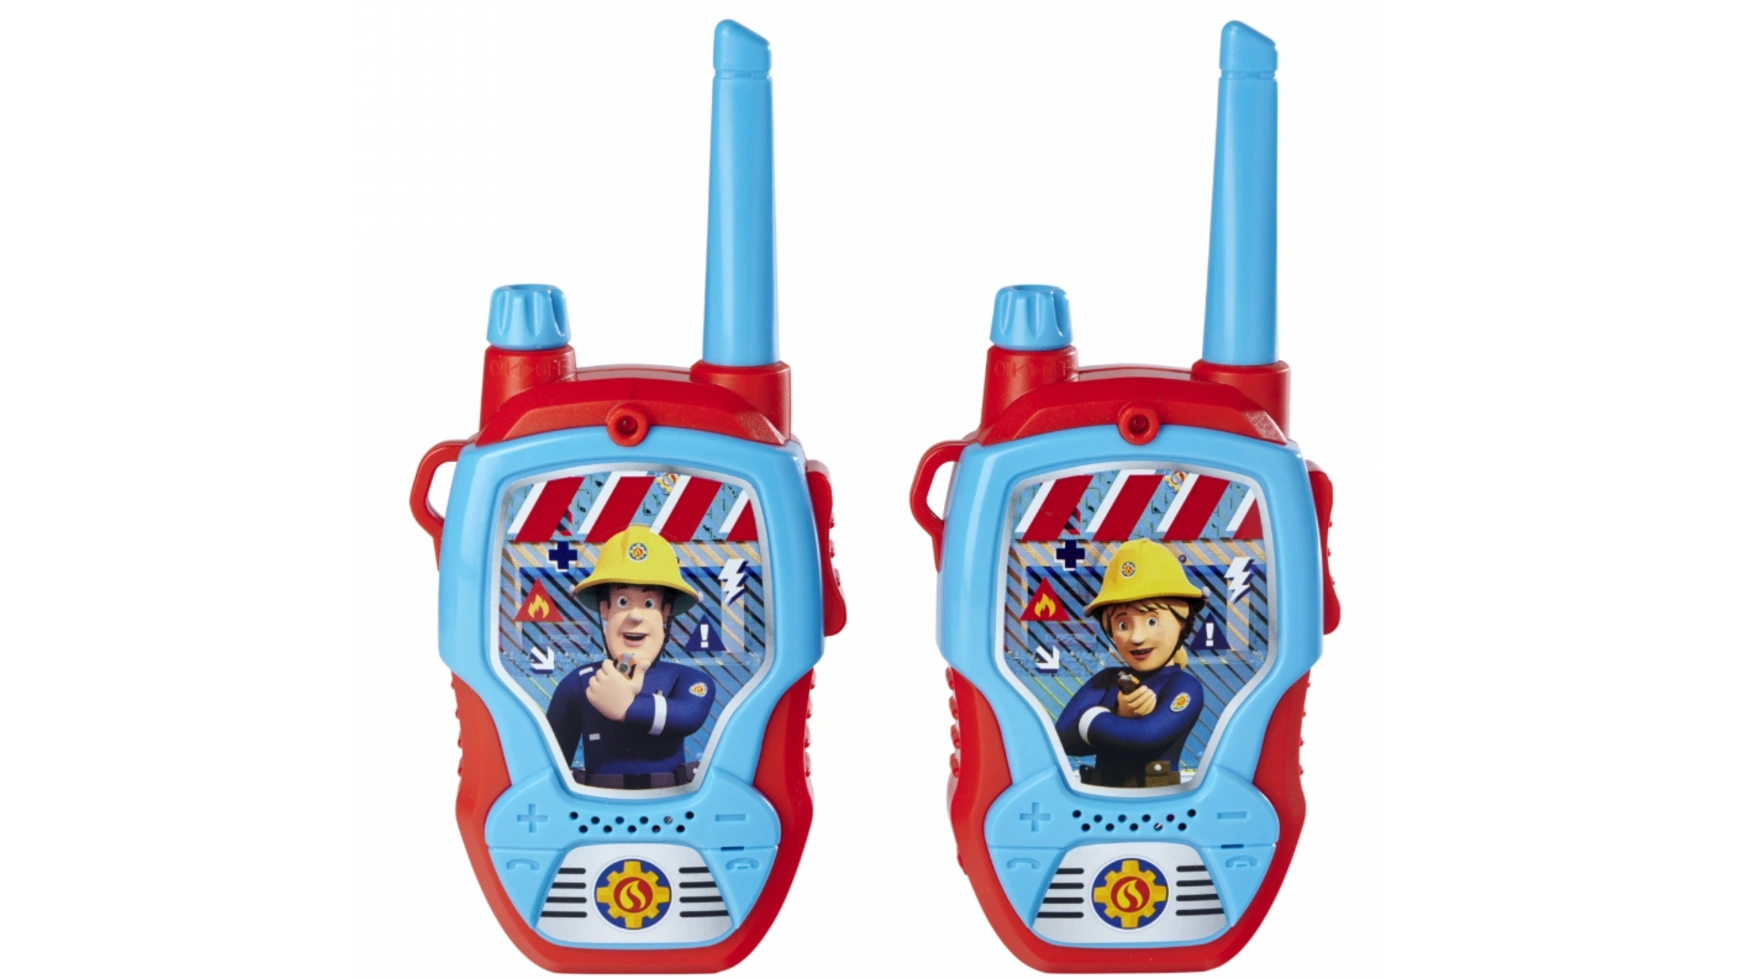 Jada Toys – Рации пожарного Сэма цена и фото